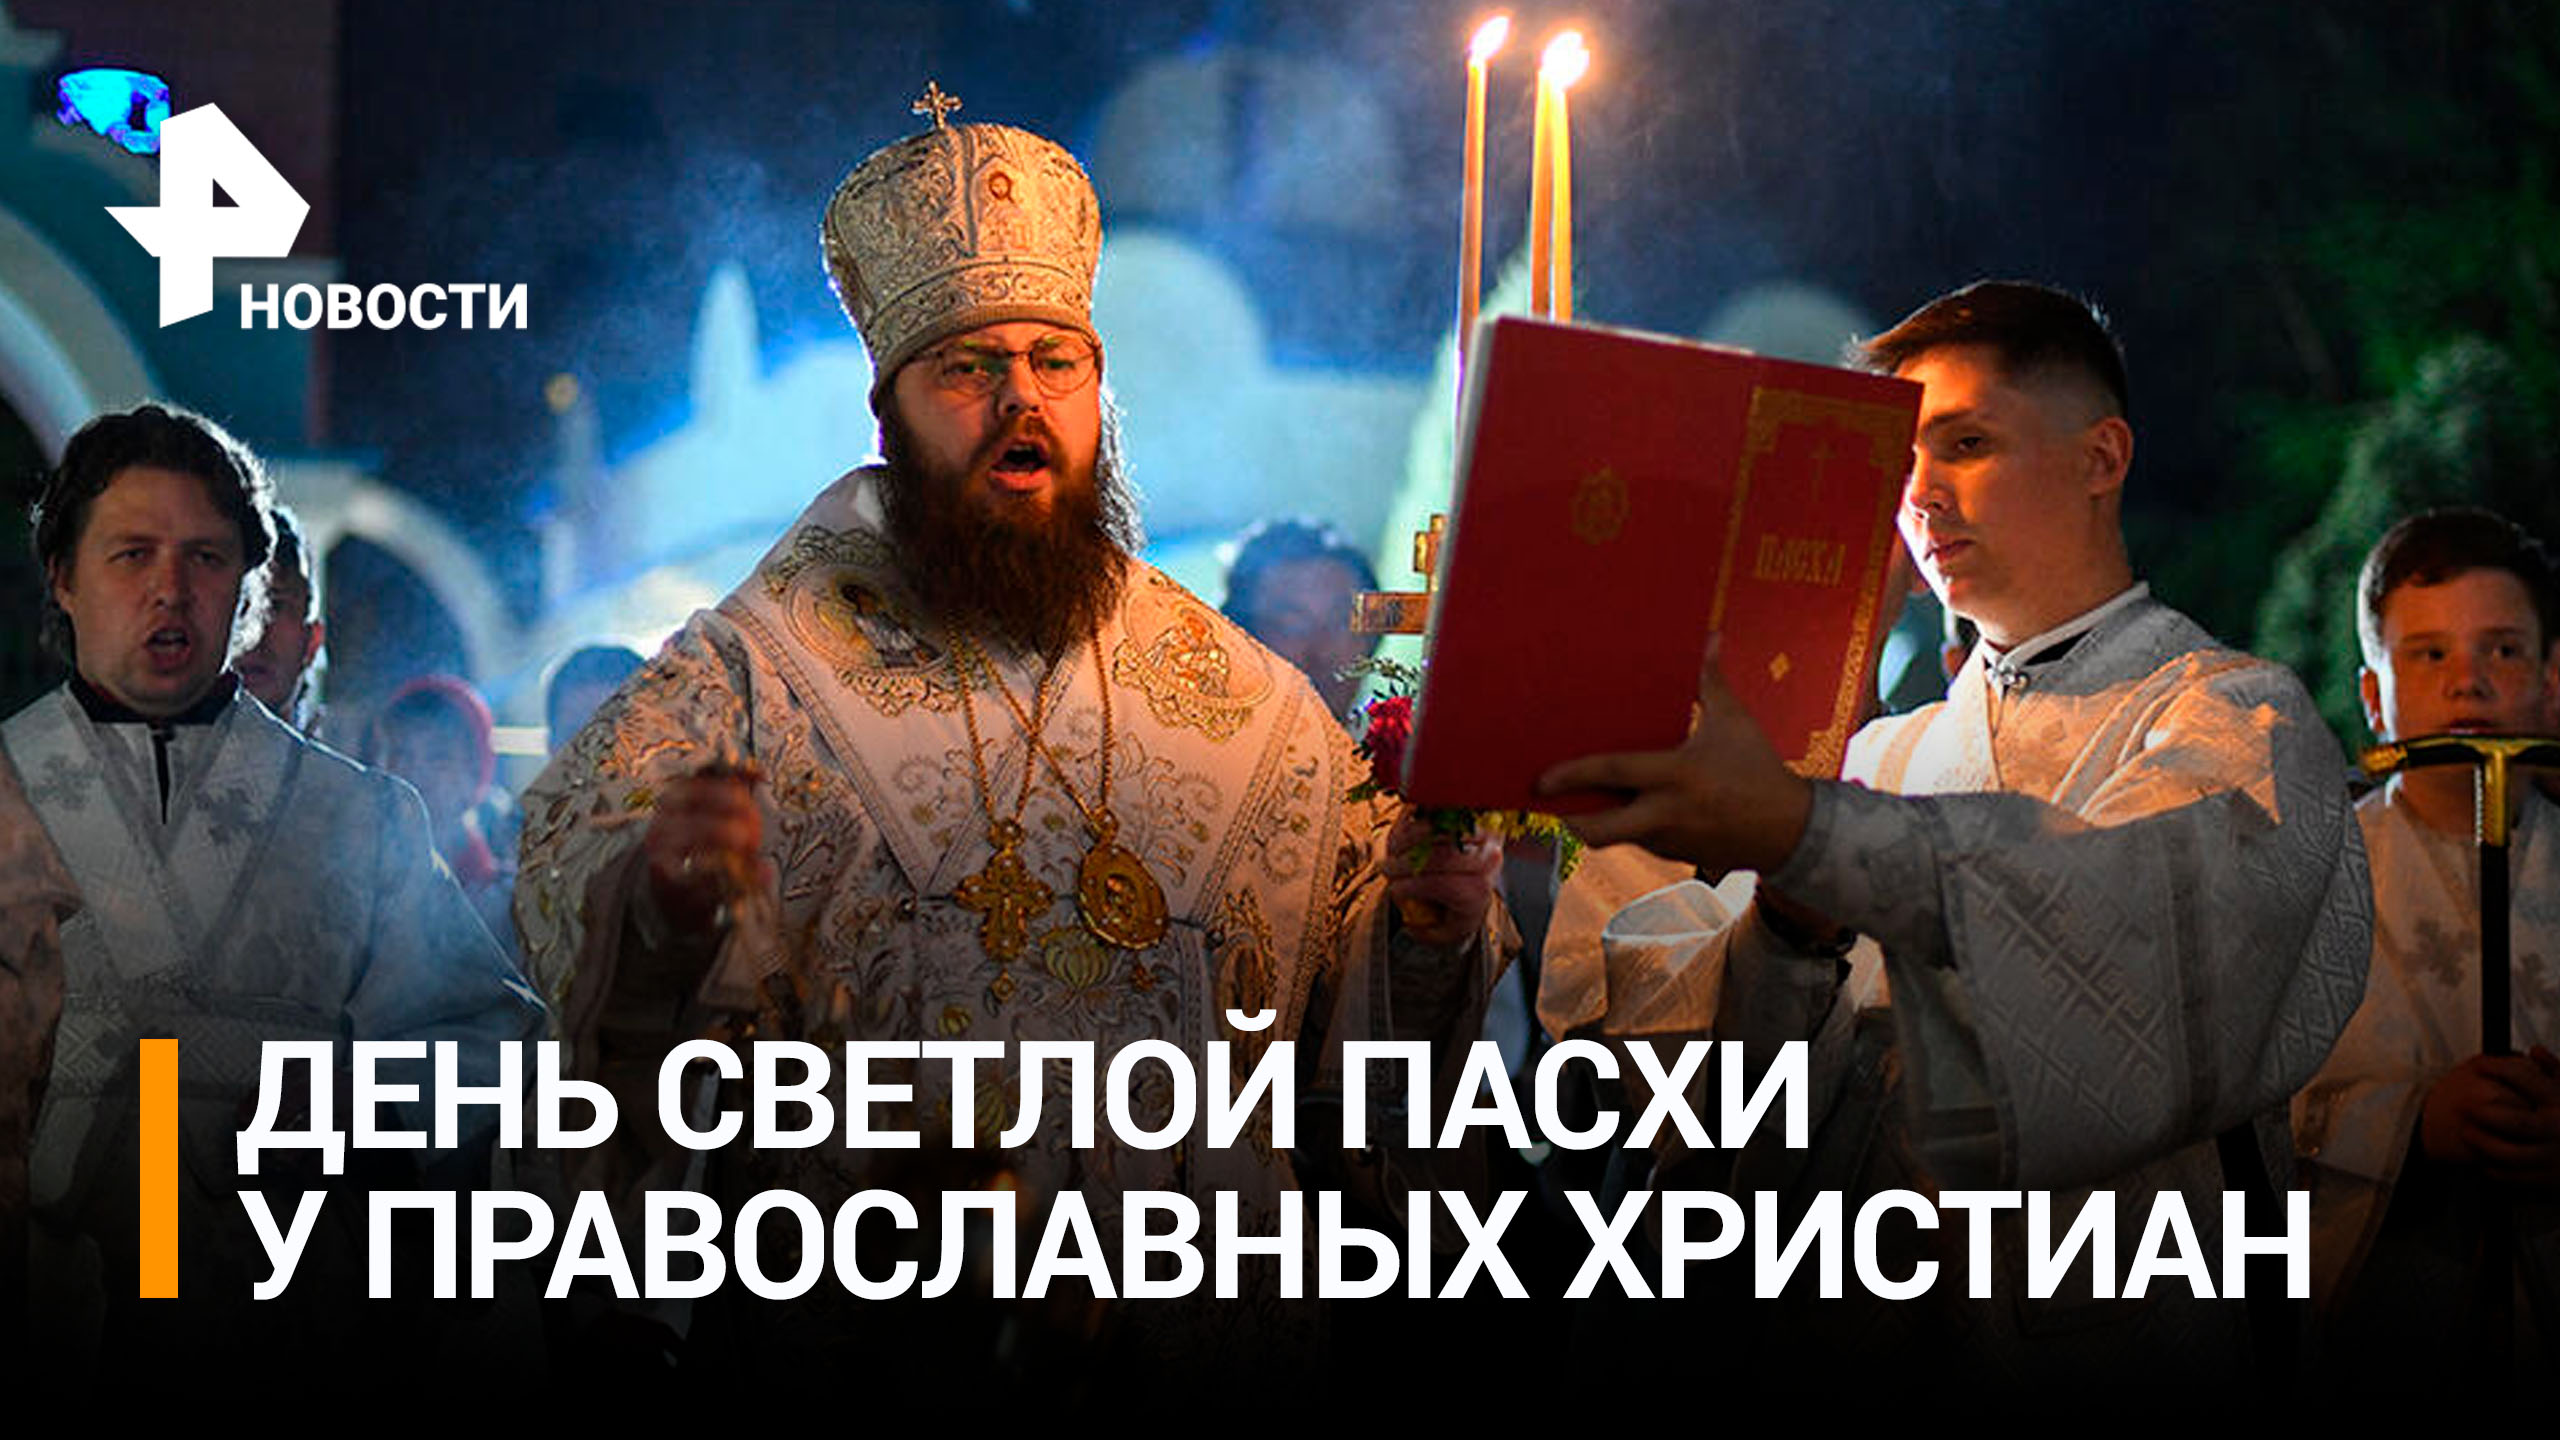 Православные христиане празднуют Пасху / РЕН Новости